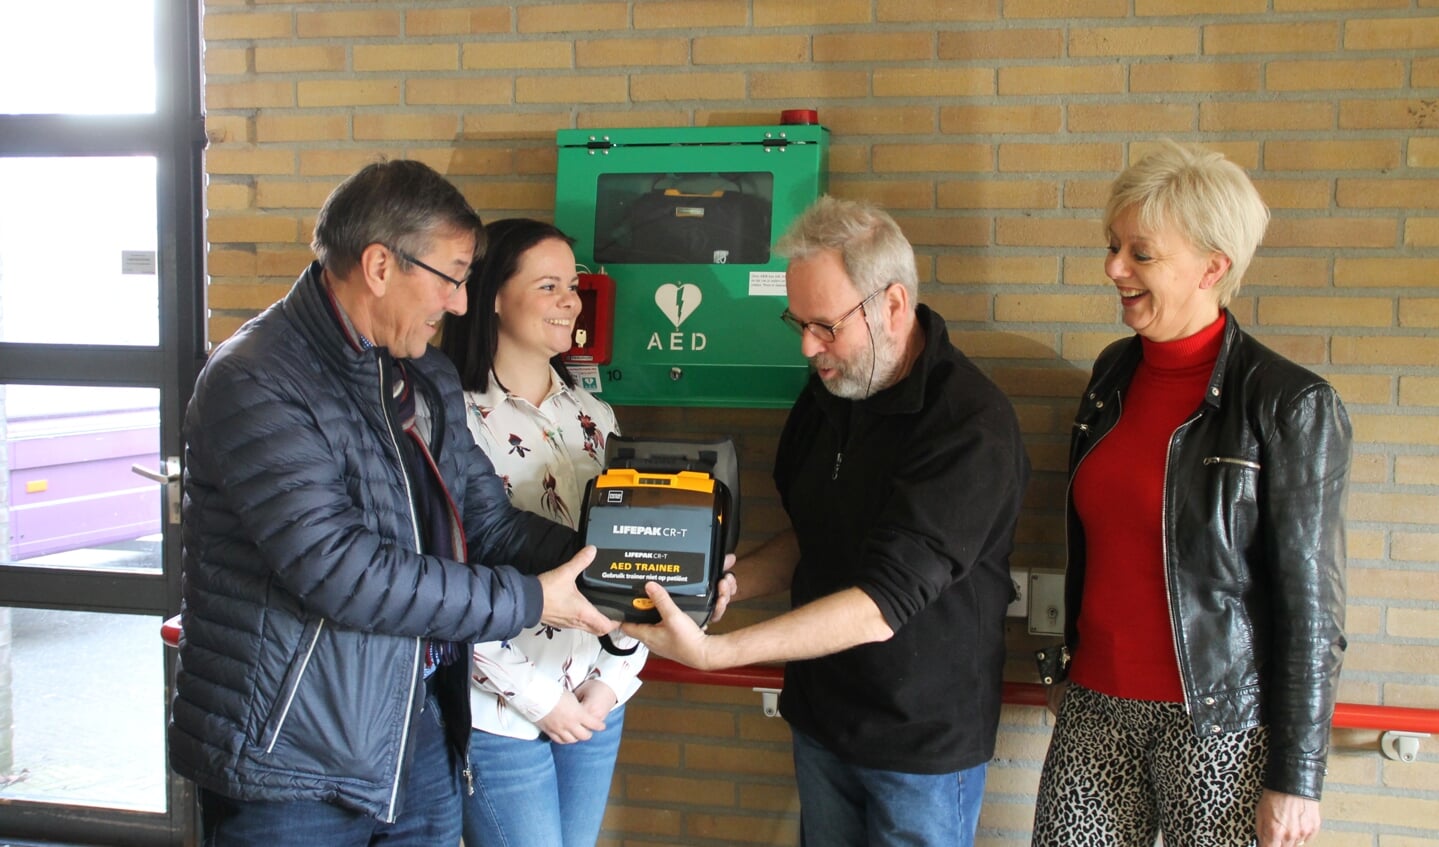 De hoofdrolspelers kijken naar een AED die Klaas Haan heeft meegenomen om het belang ervan te duiden.